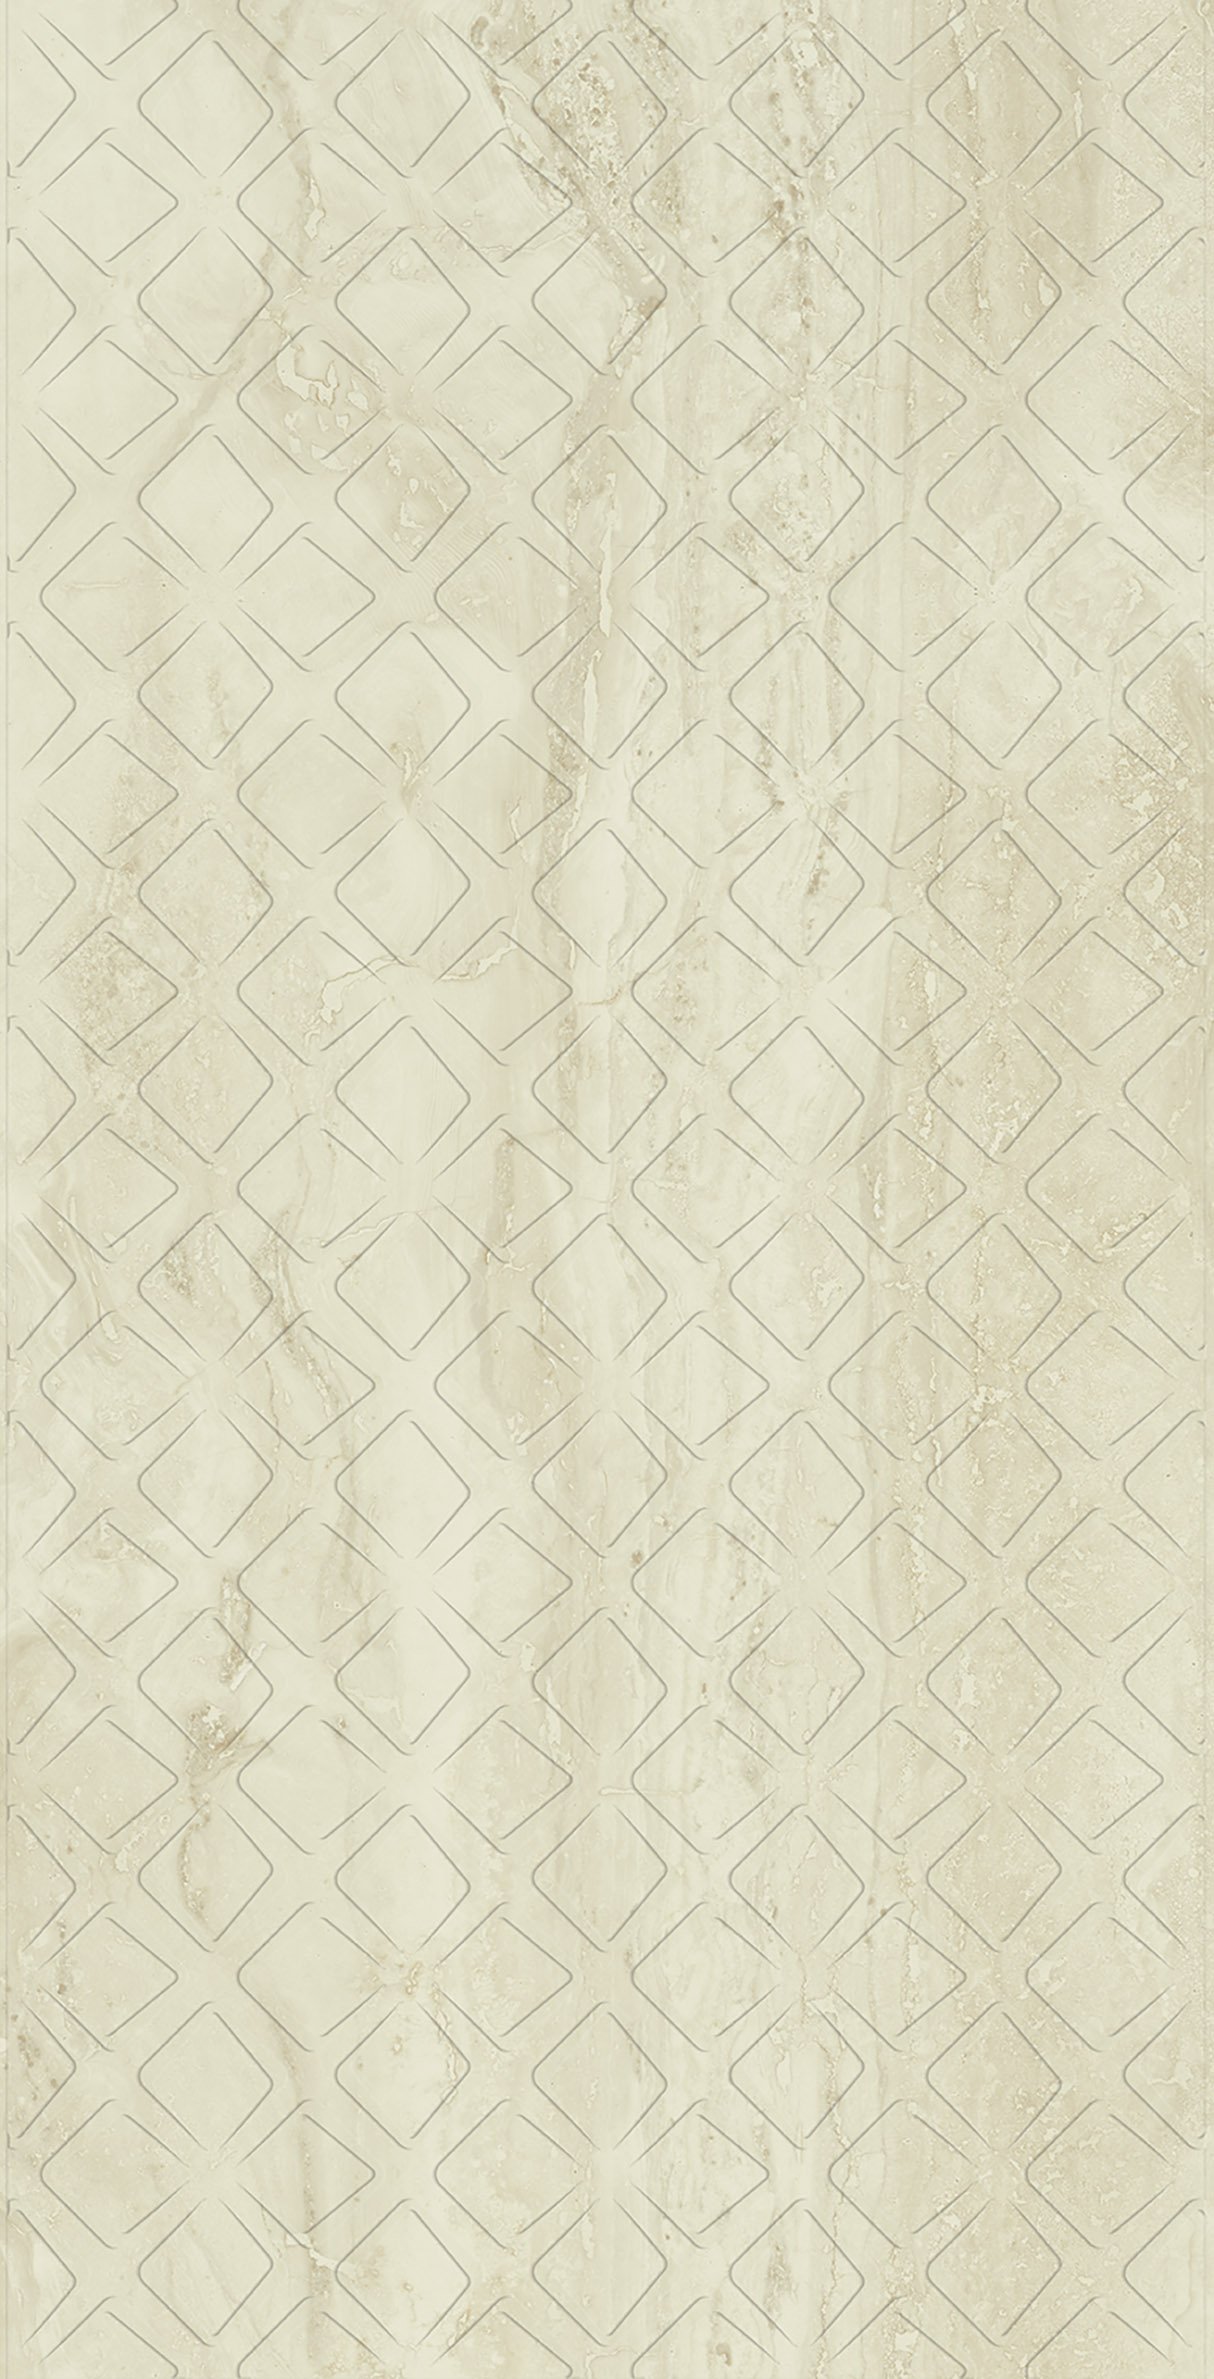 Keraminės sienų plytelės SILENCE BEIGE ŚCIANA REKT. MAT, 29,8 x 59,8 cm